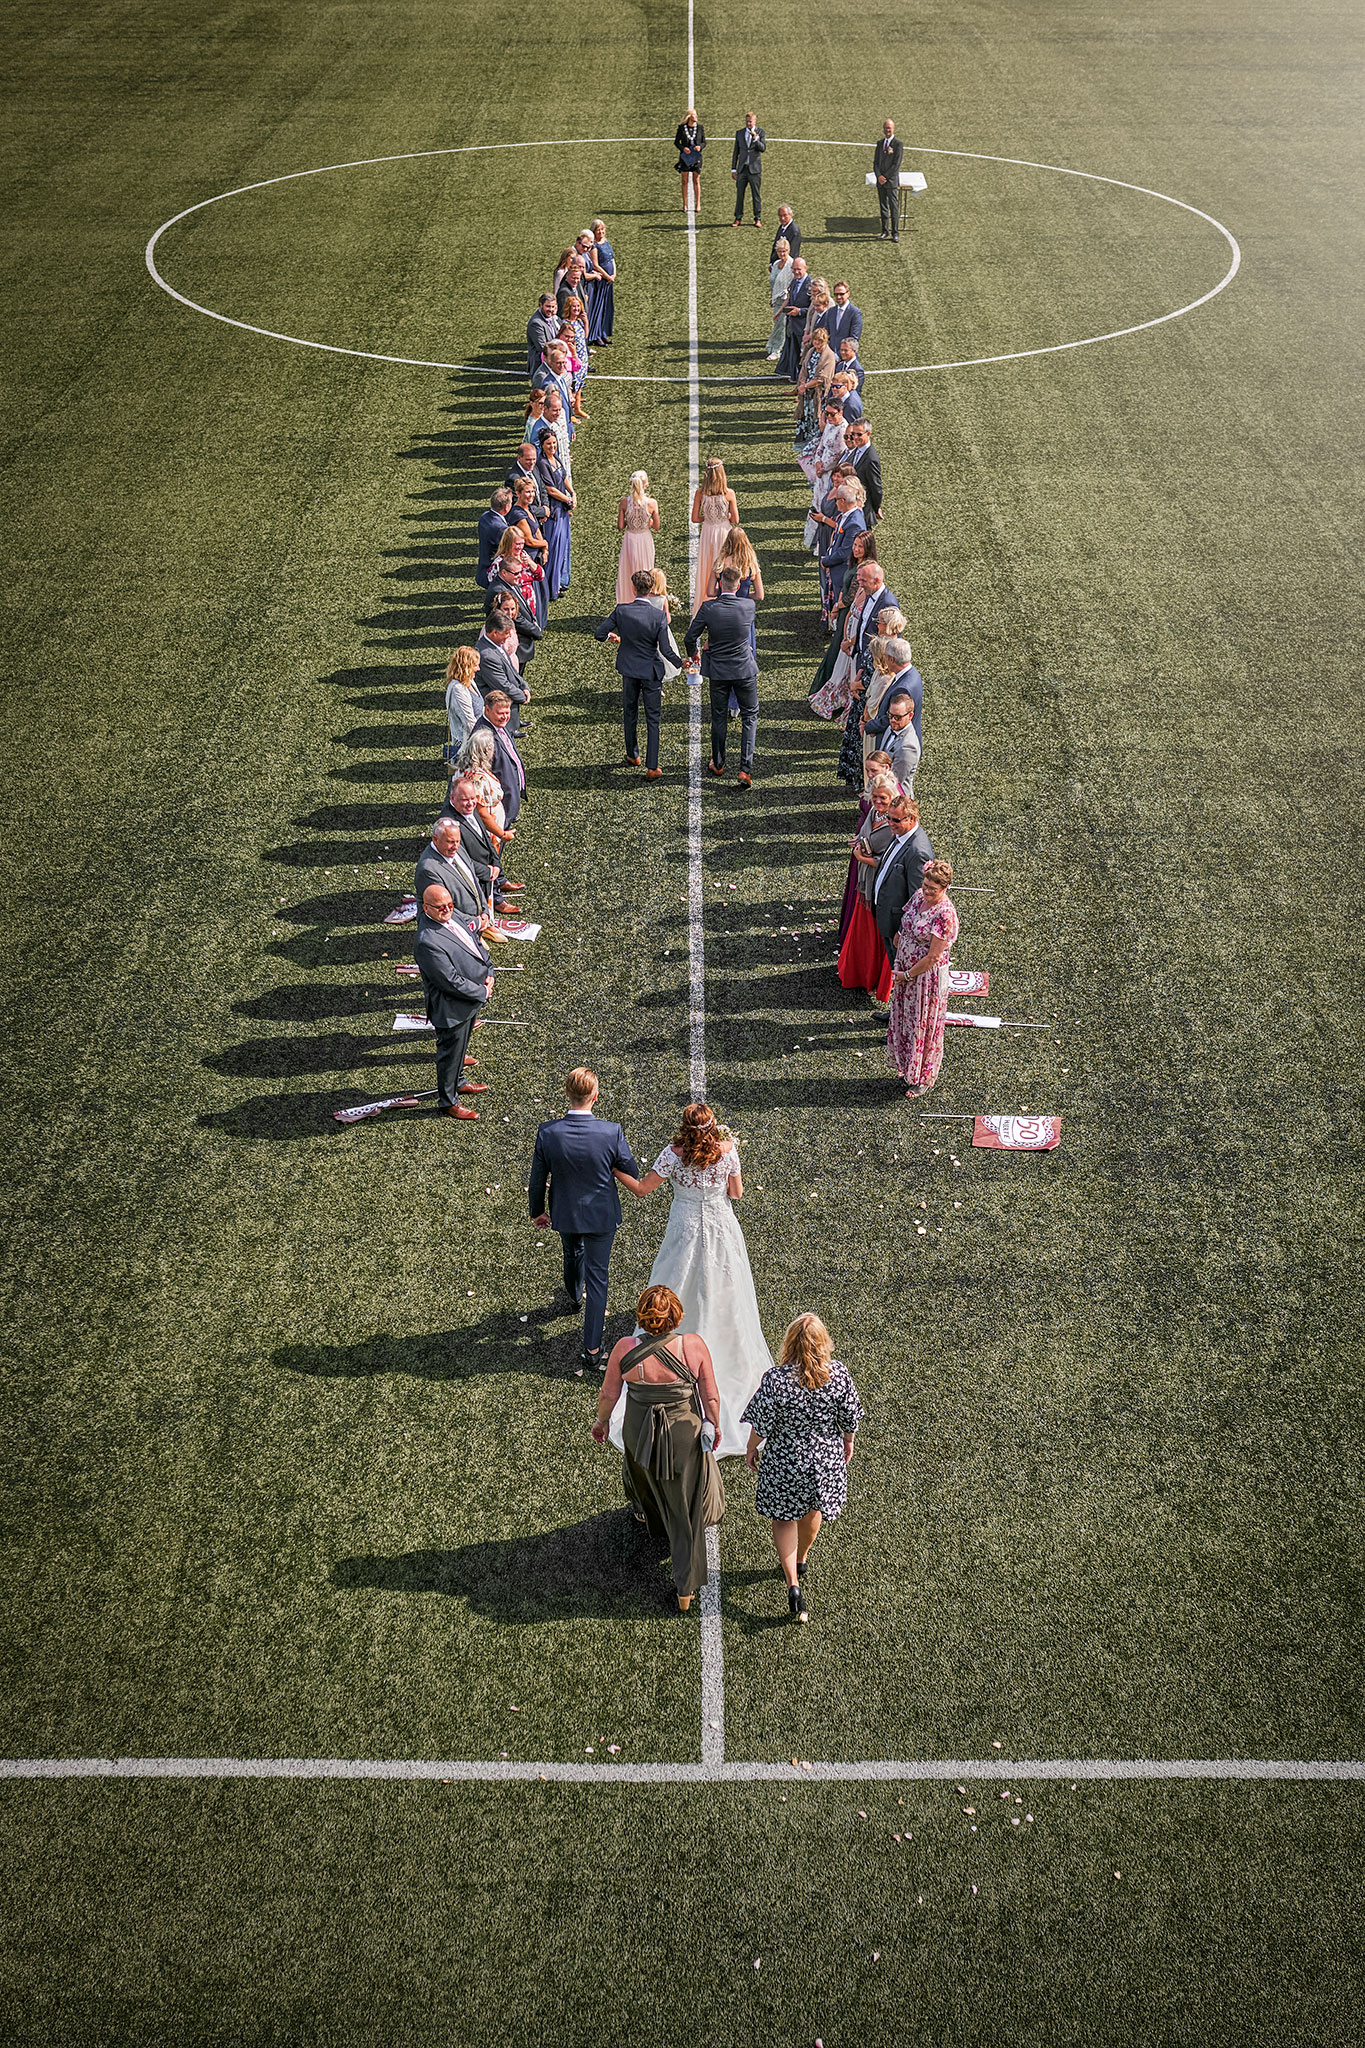 uvanlig bryllup som finner sted på en fotballbane